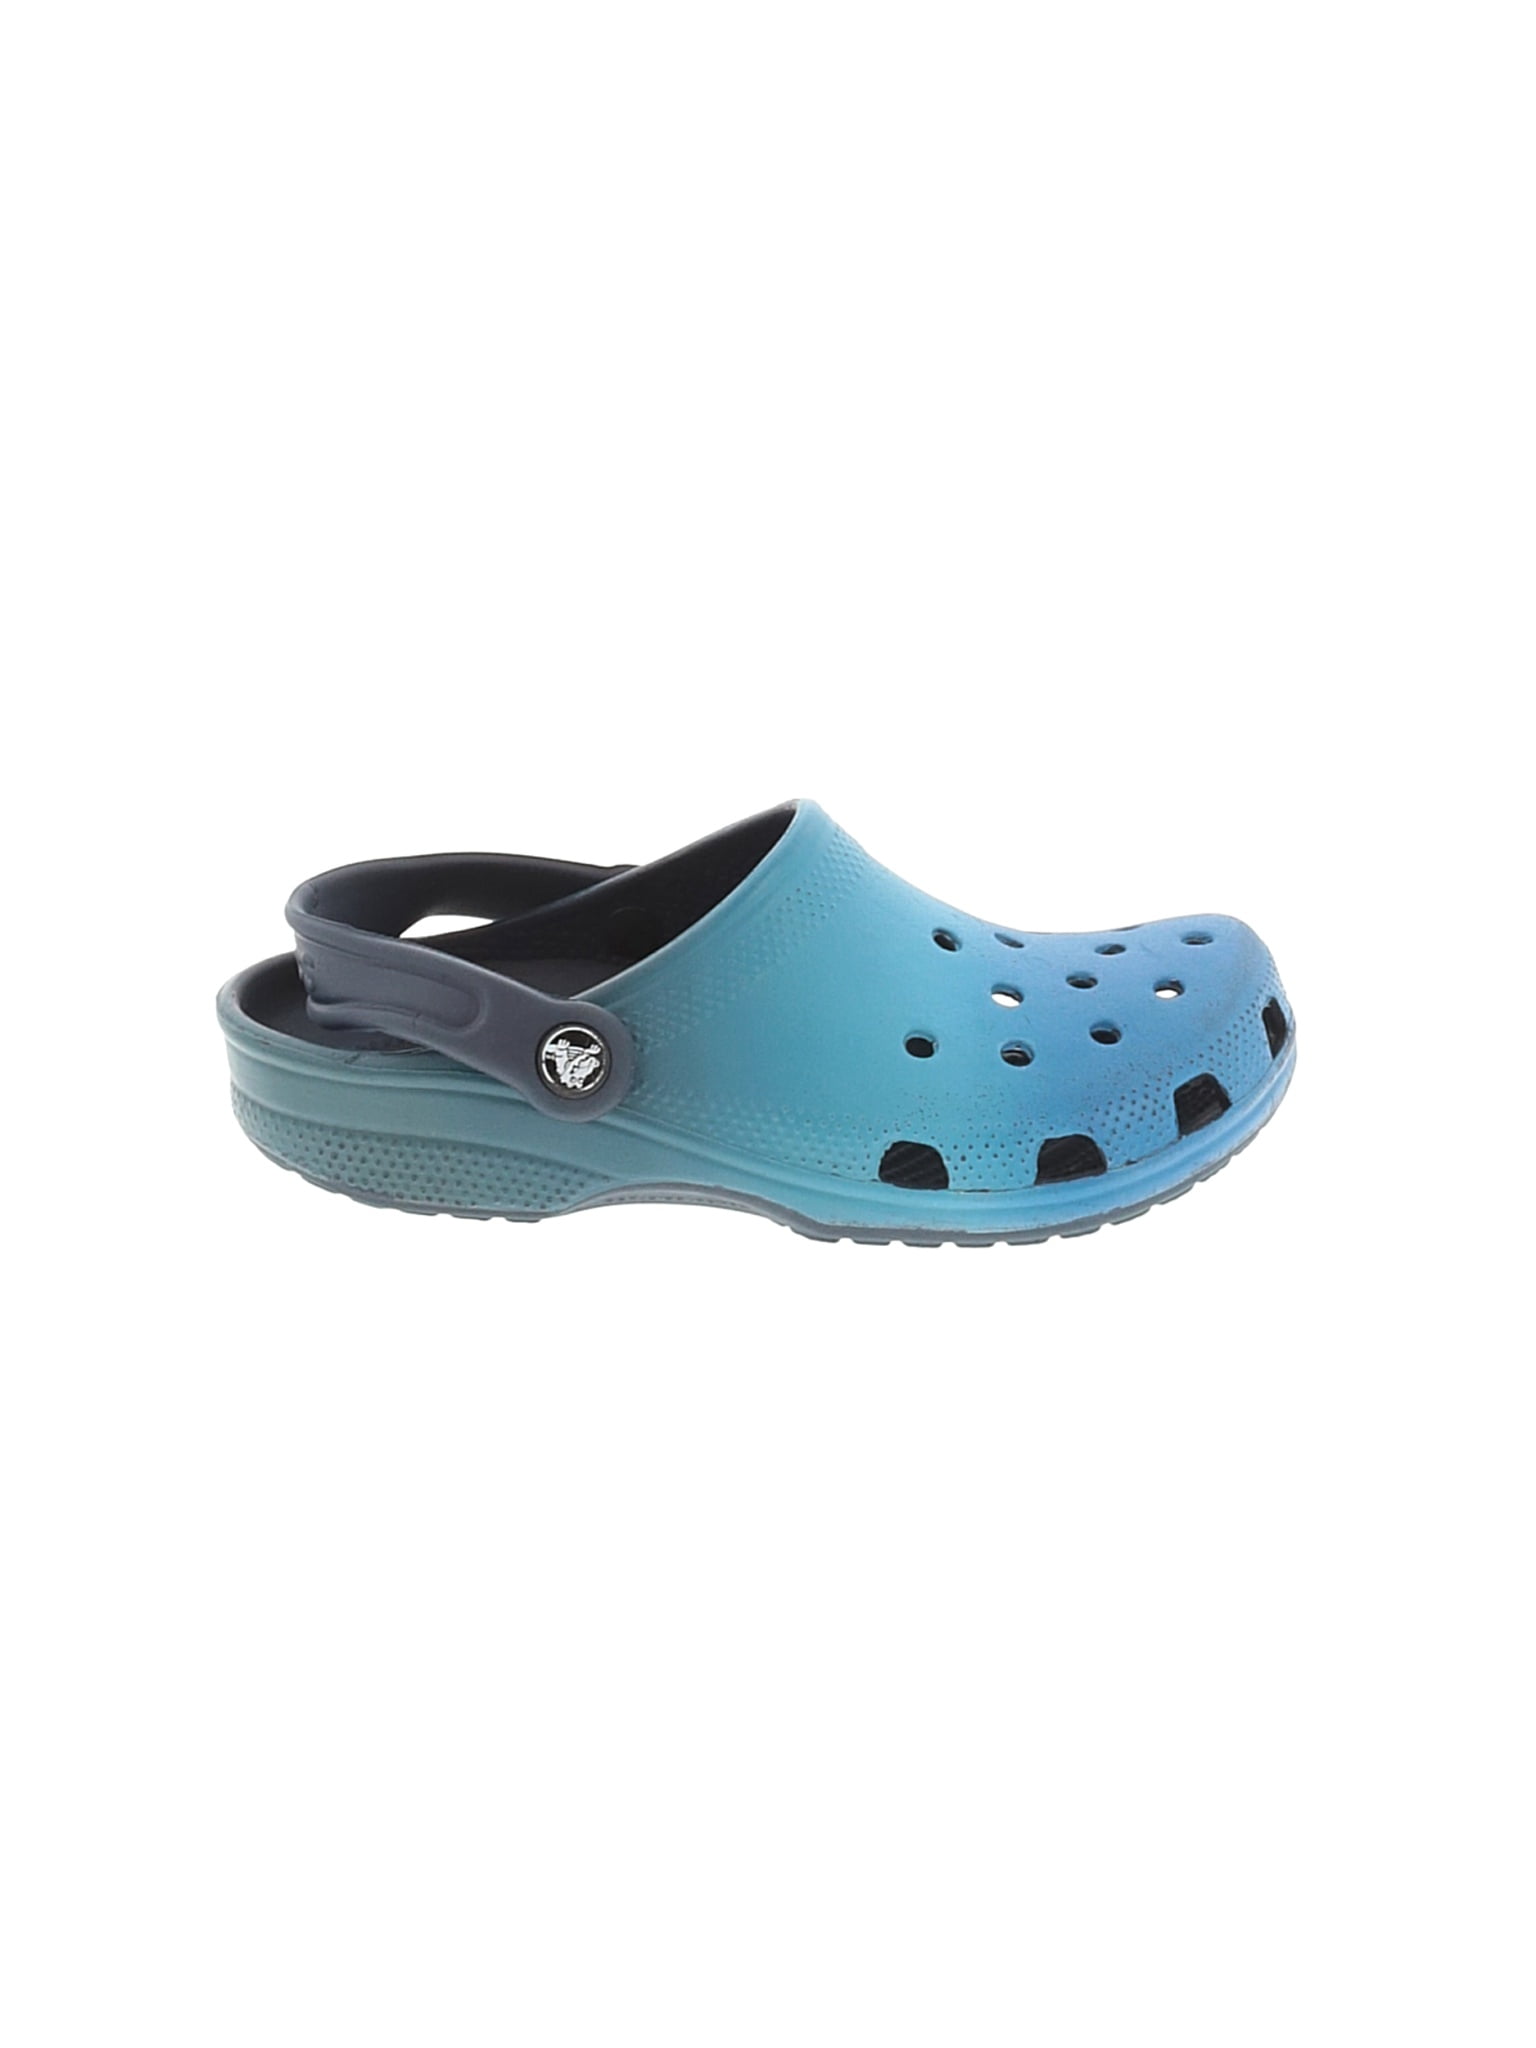 size 5 womens crocs